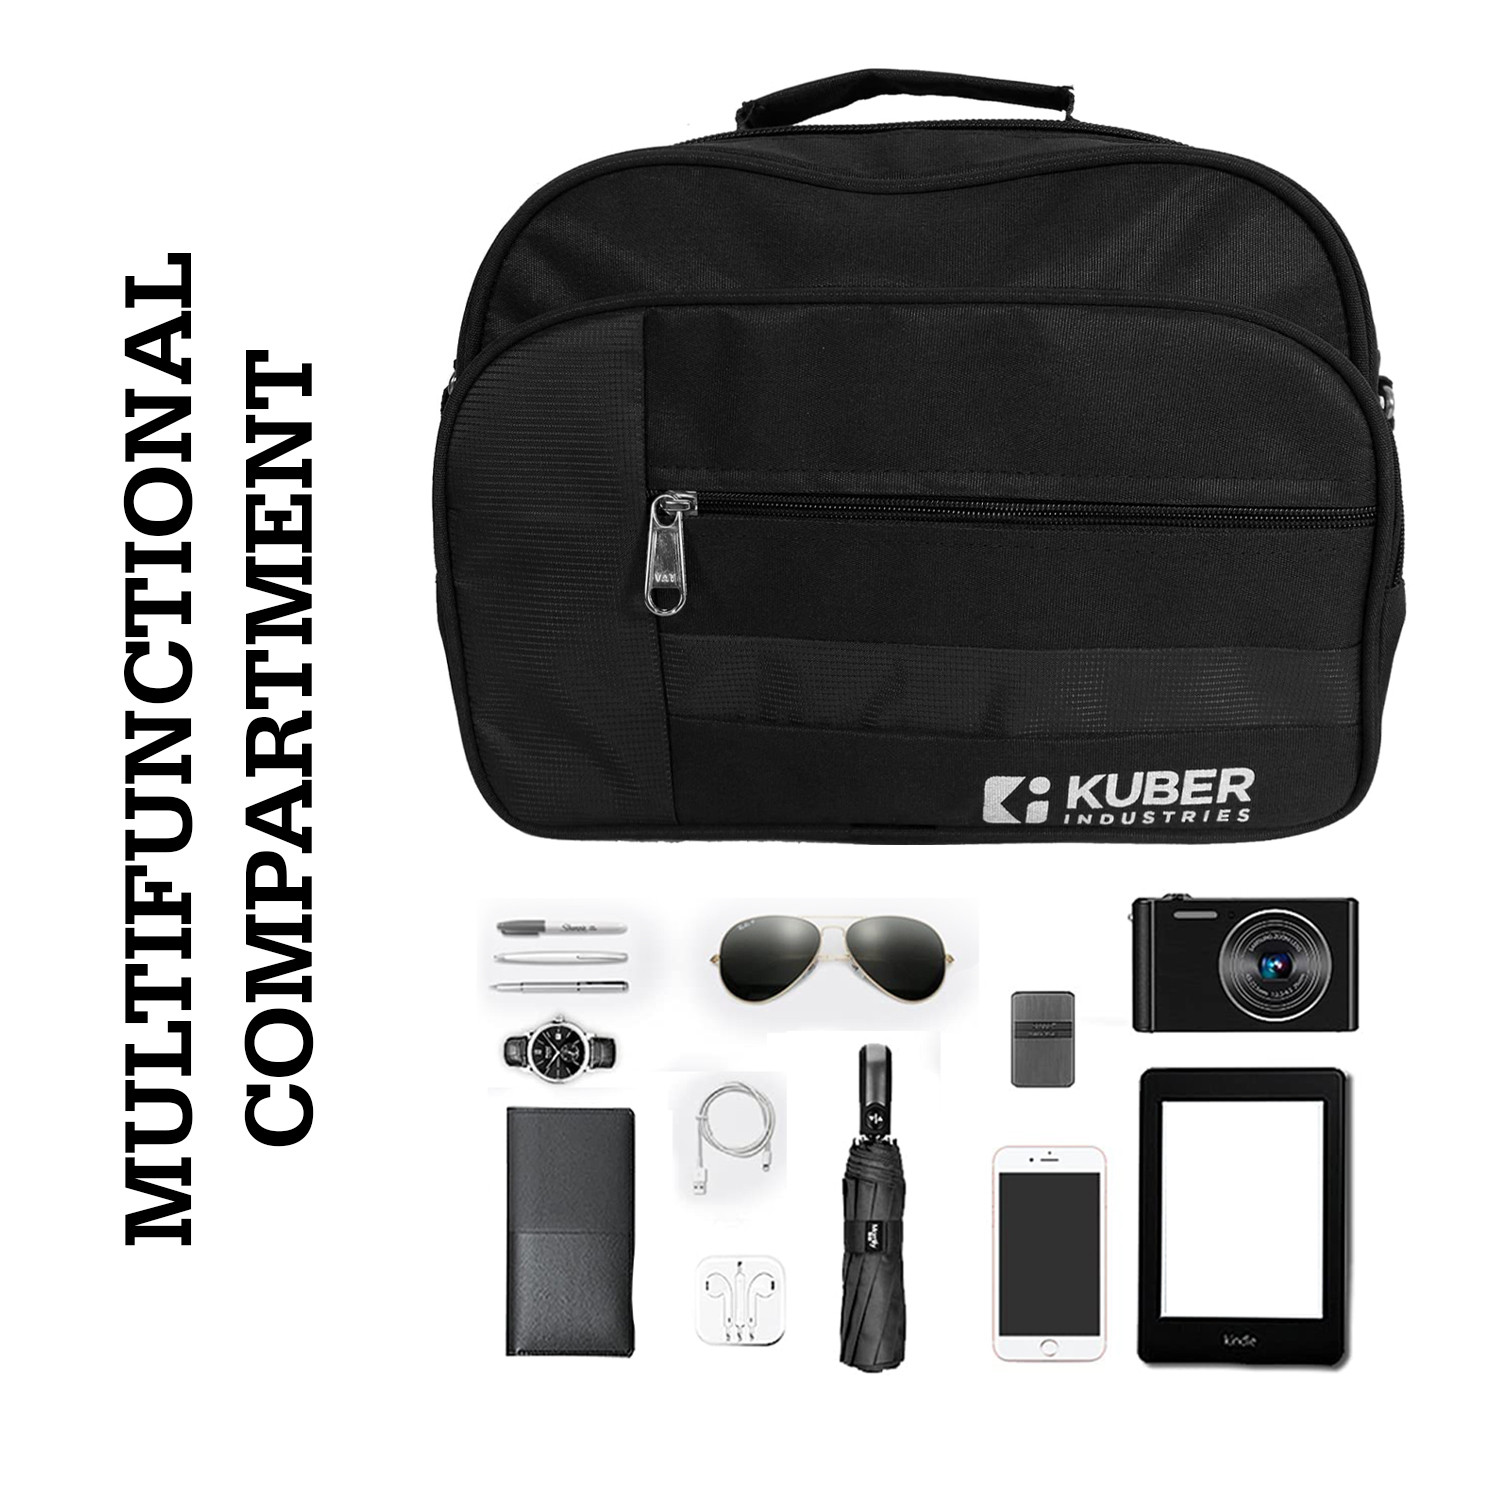 Kuber Industries Sling Bag|Canvas Adjustable Strap 4 Compartment Crossbody Bag|Sling Bag For Men|Sling Bags For Women|1 Inside Zip Pocket for Travel & Office (Black)